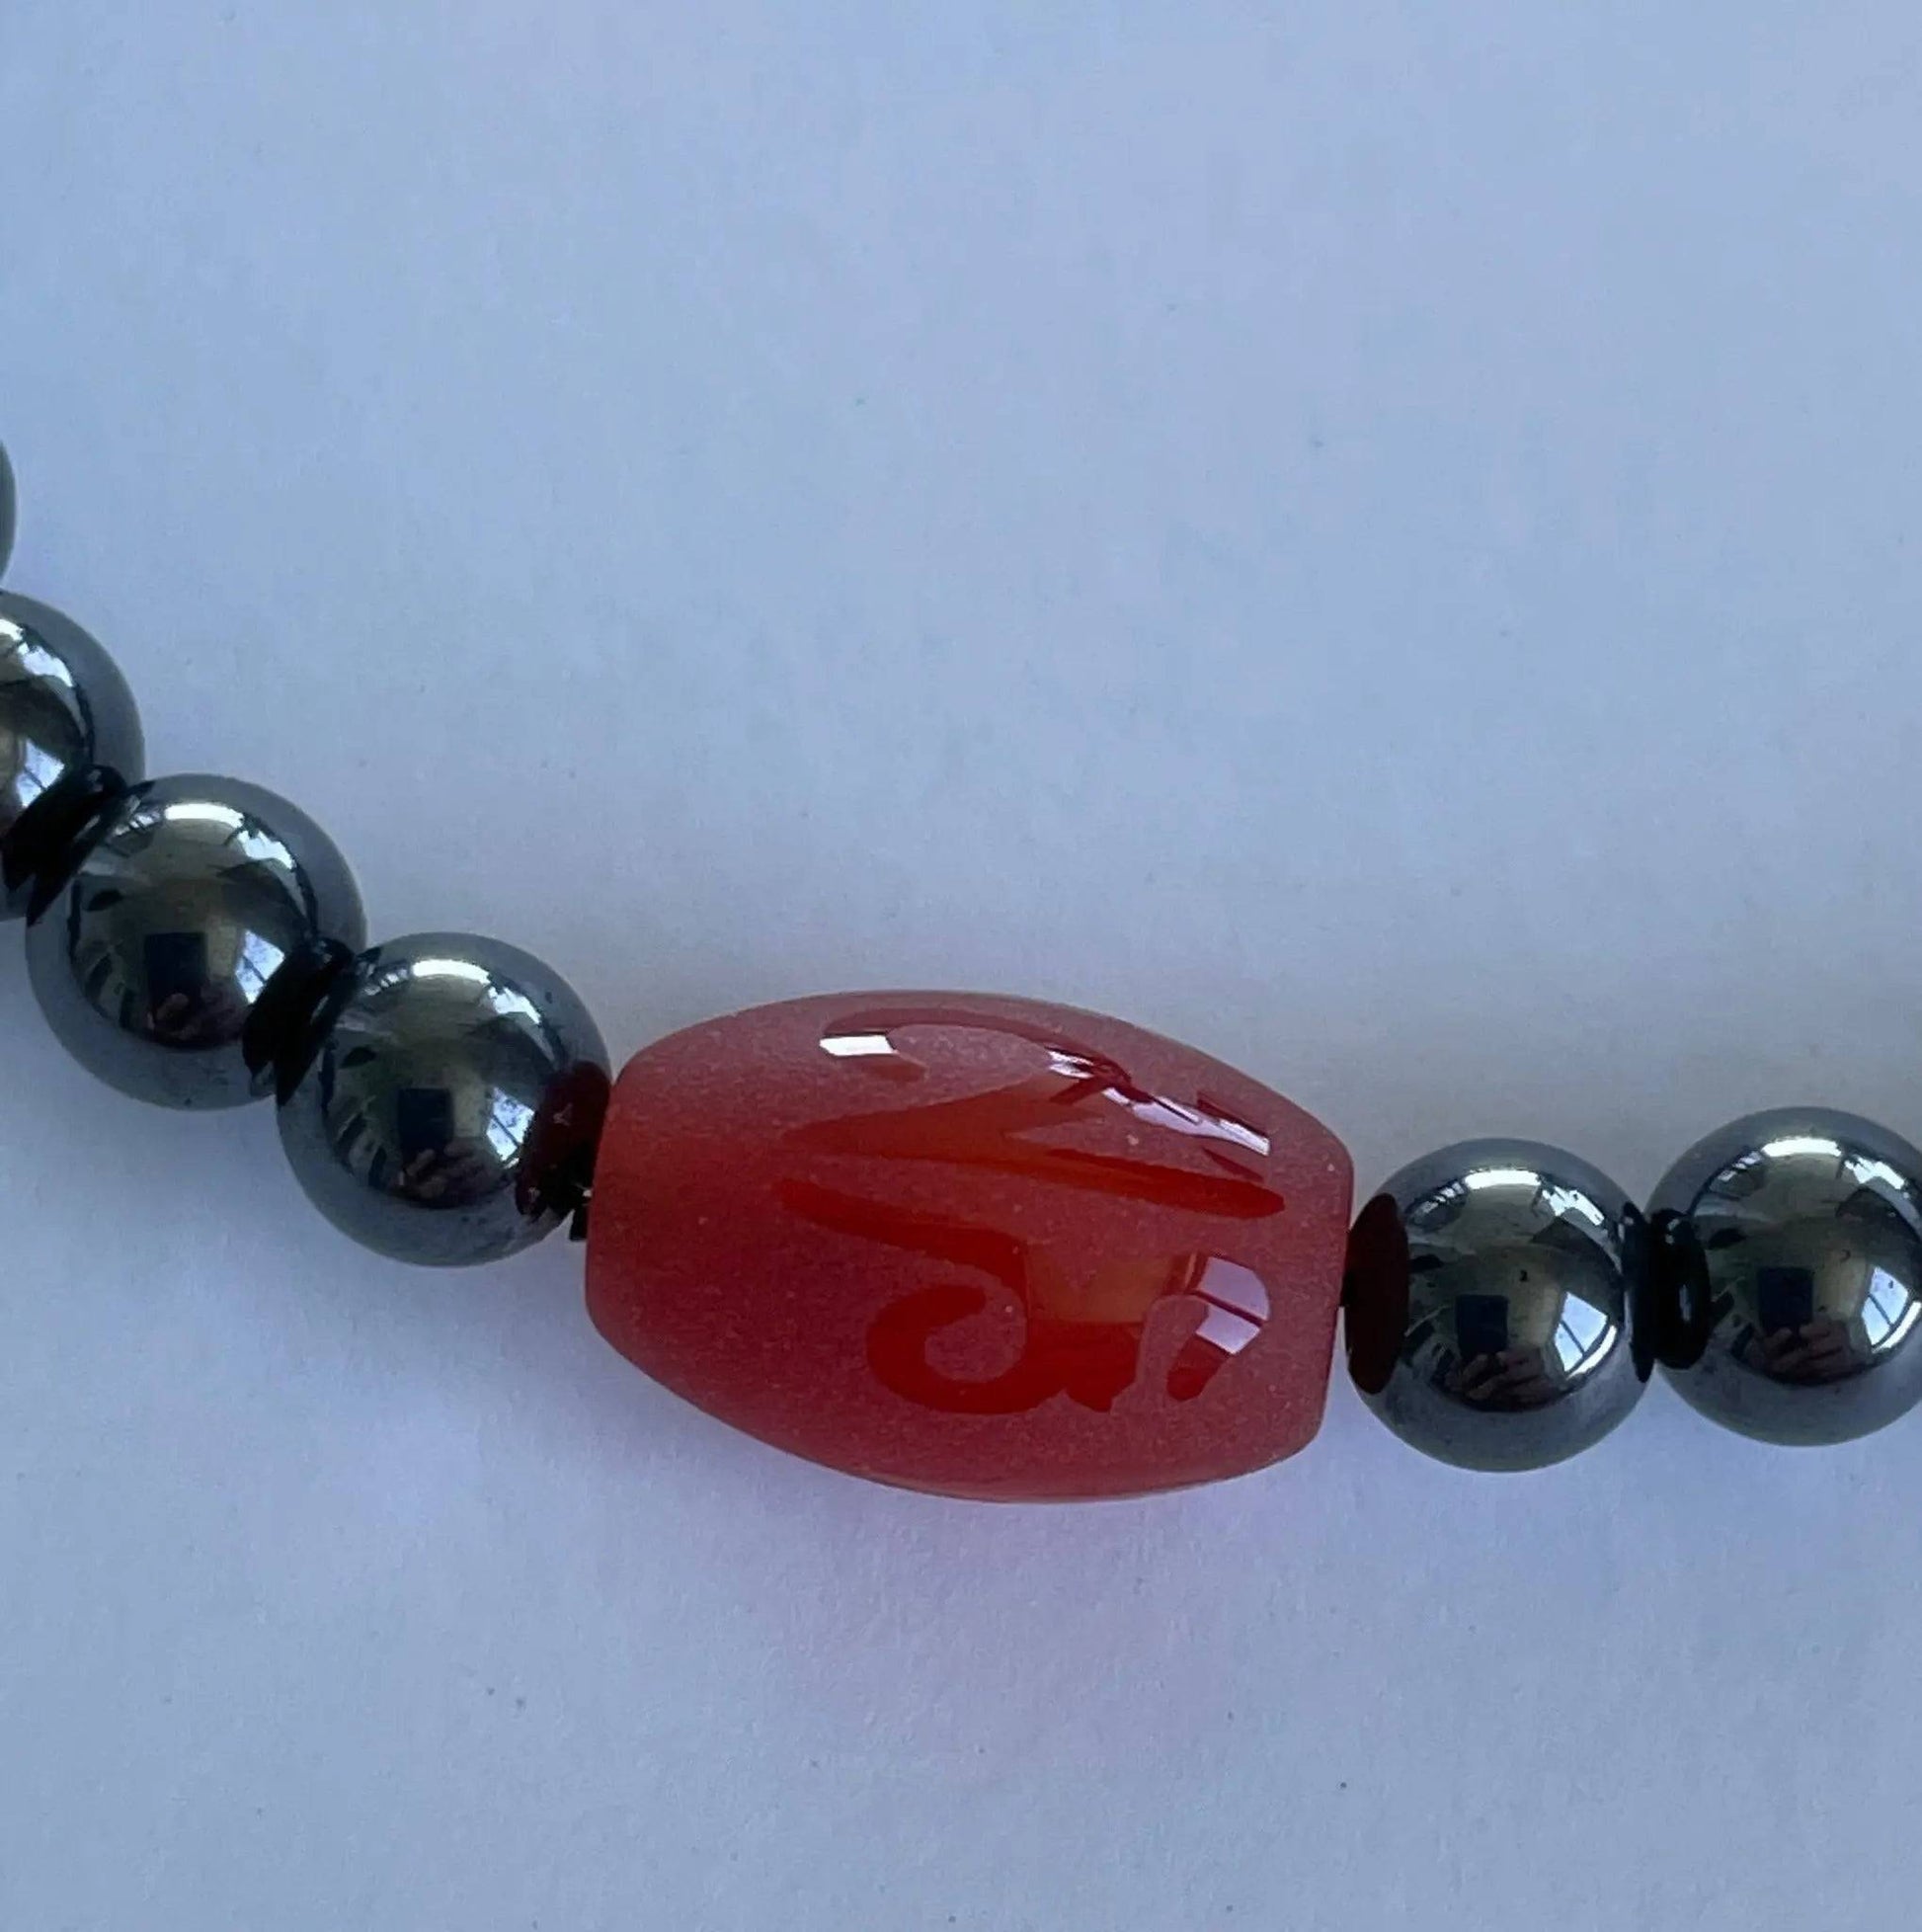 Om (Aum) Bracelet - Hematite & Red Agate - Uplift Beads